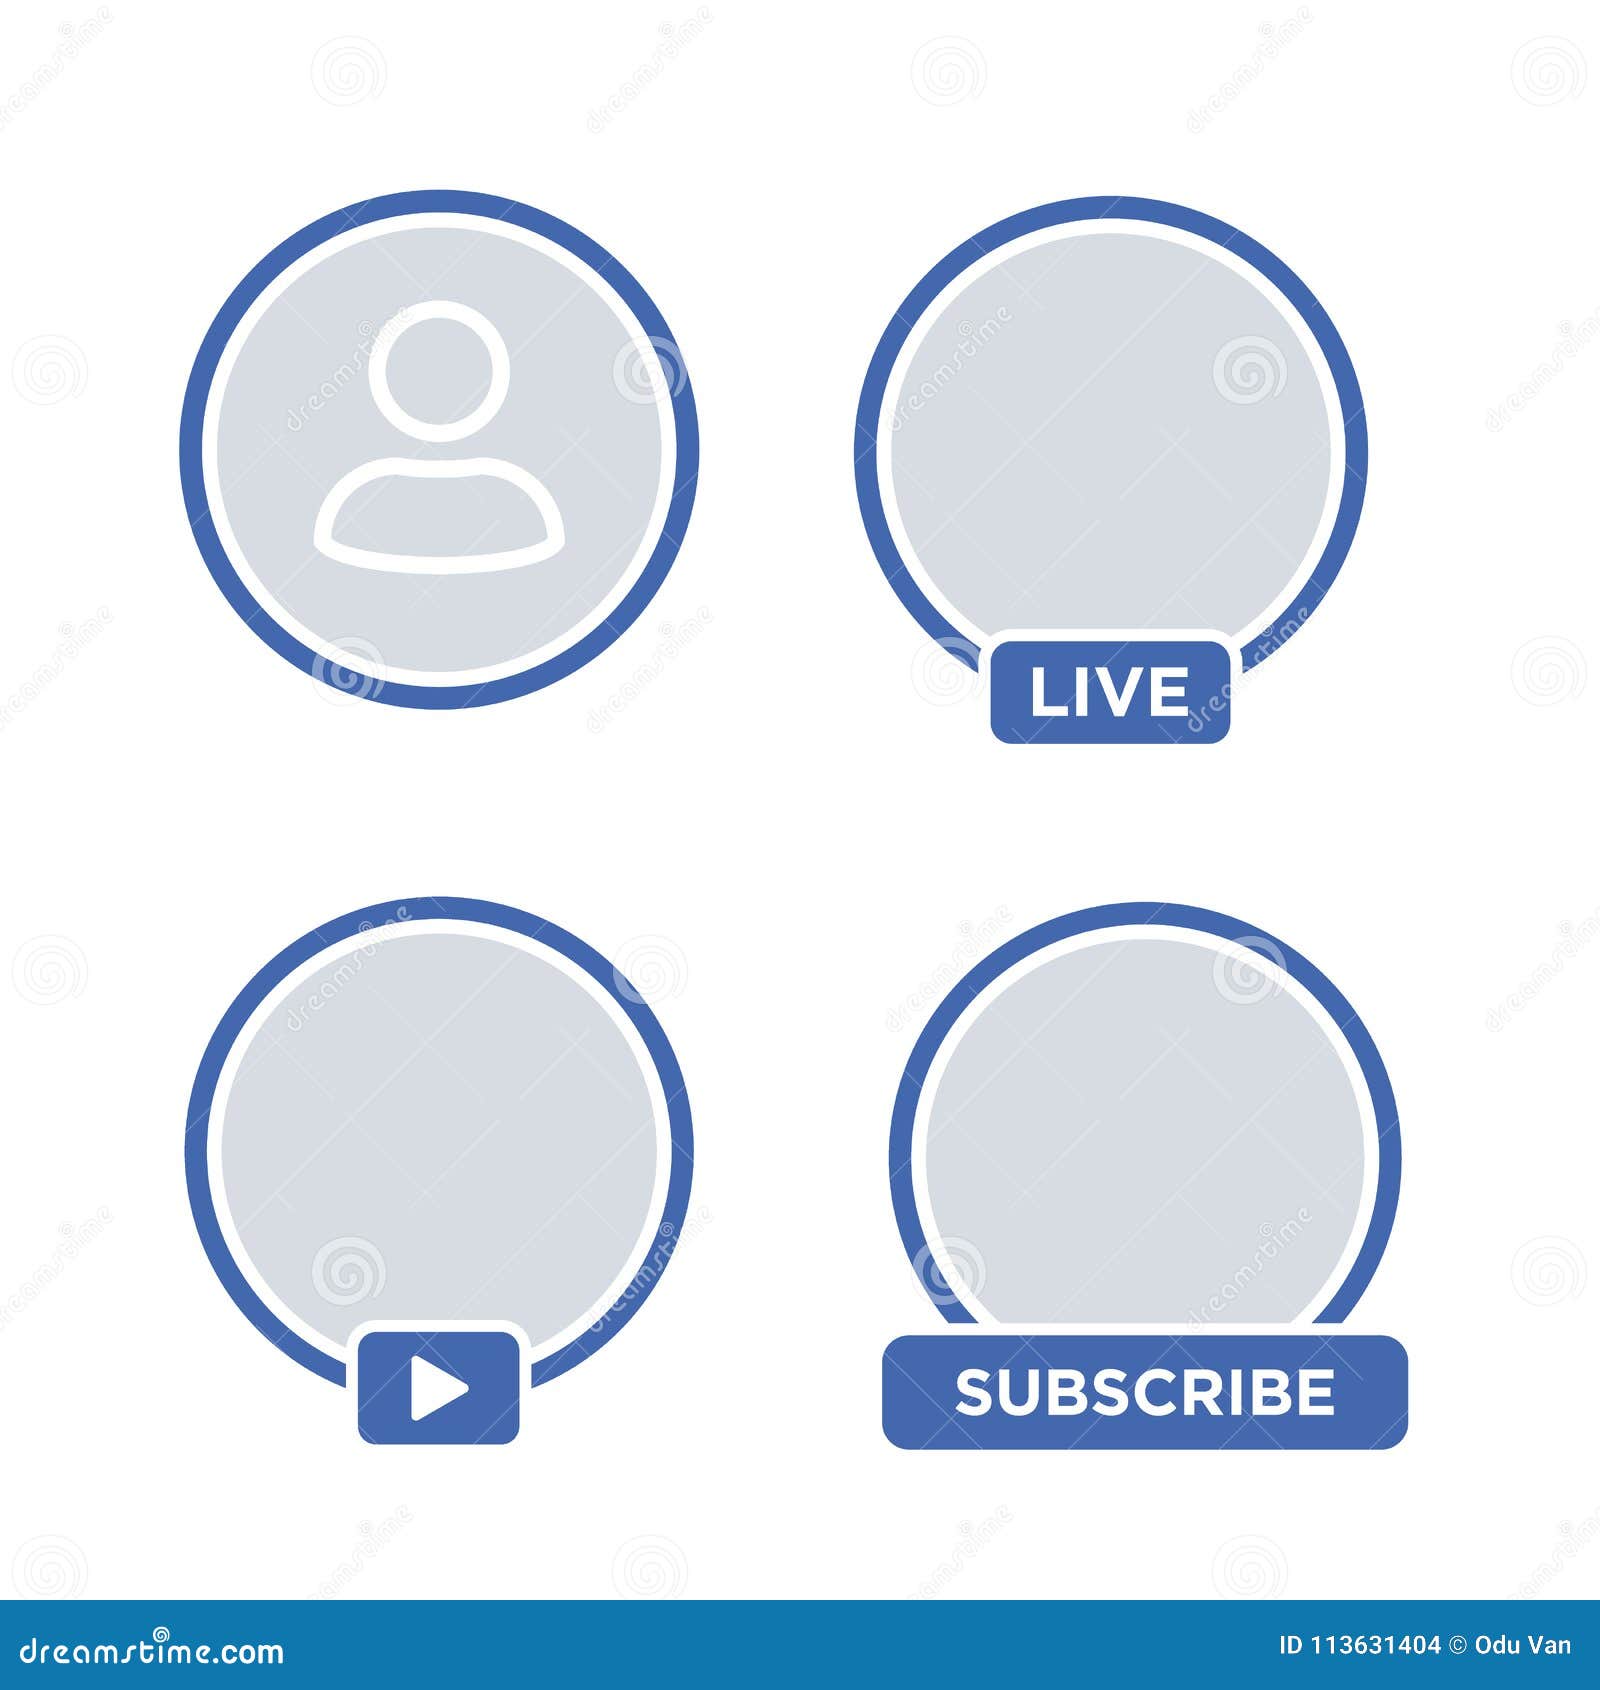 Tạo nhãn dán riêng sticker avatar ảnh đại diện Facebook Messenger